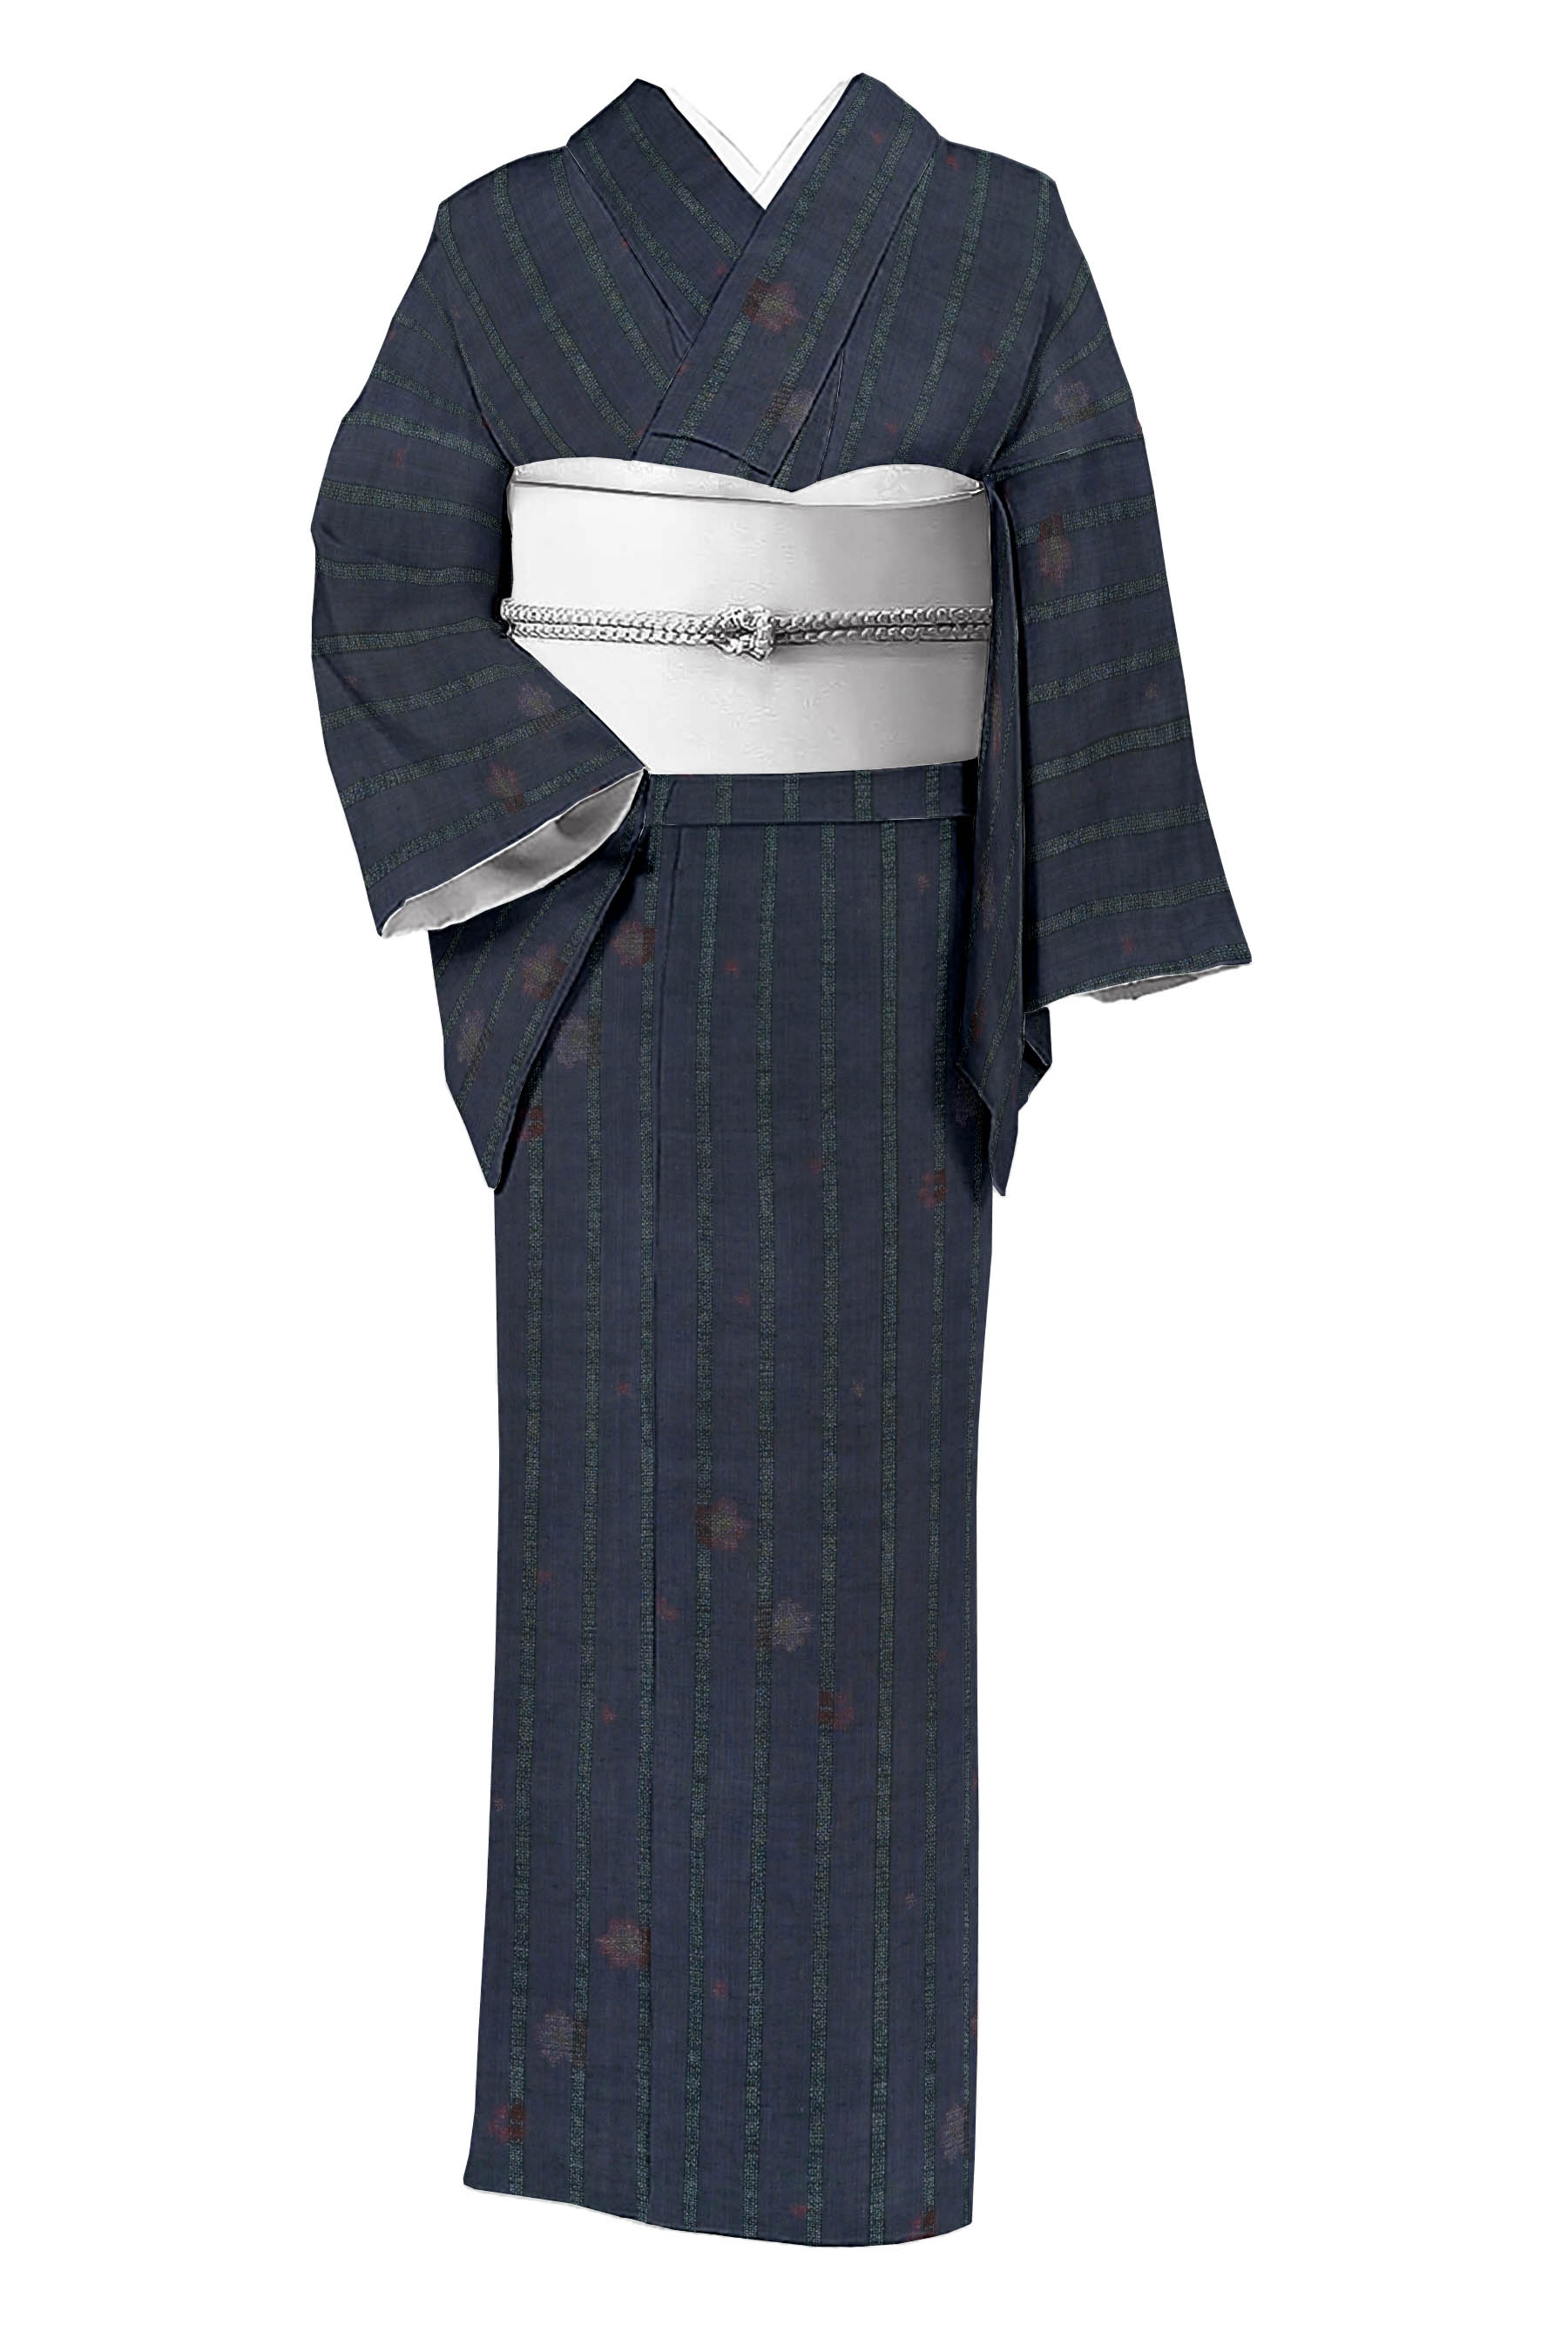 民芸紬】高級手縫いお仕立て着物 日本の絹 - 着物